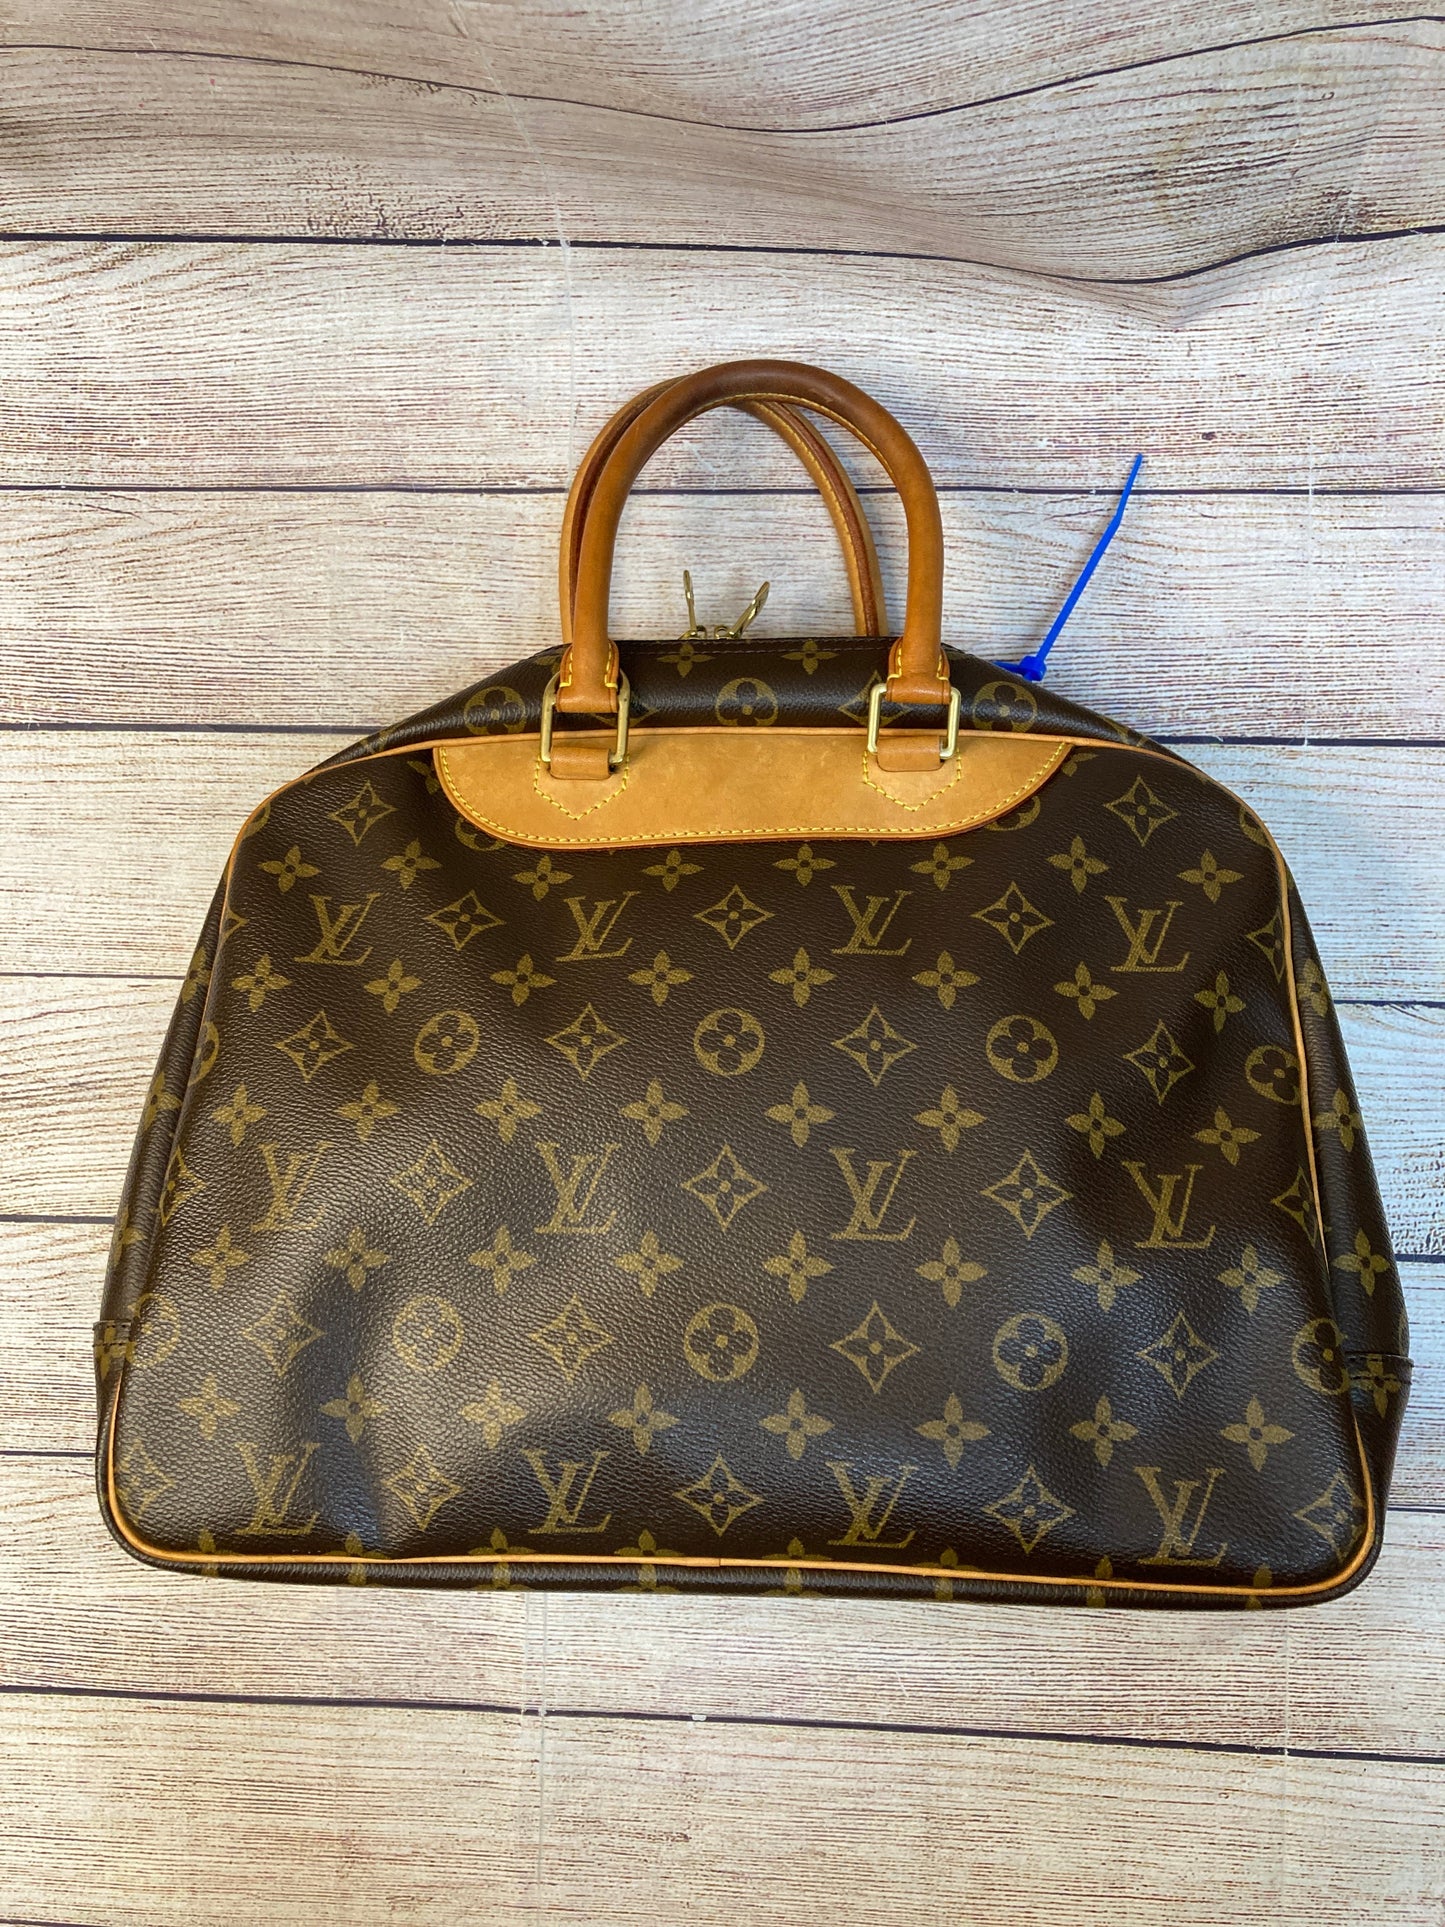 Luggage Luxury Designer By Louis Vuitton  Size: Medium